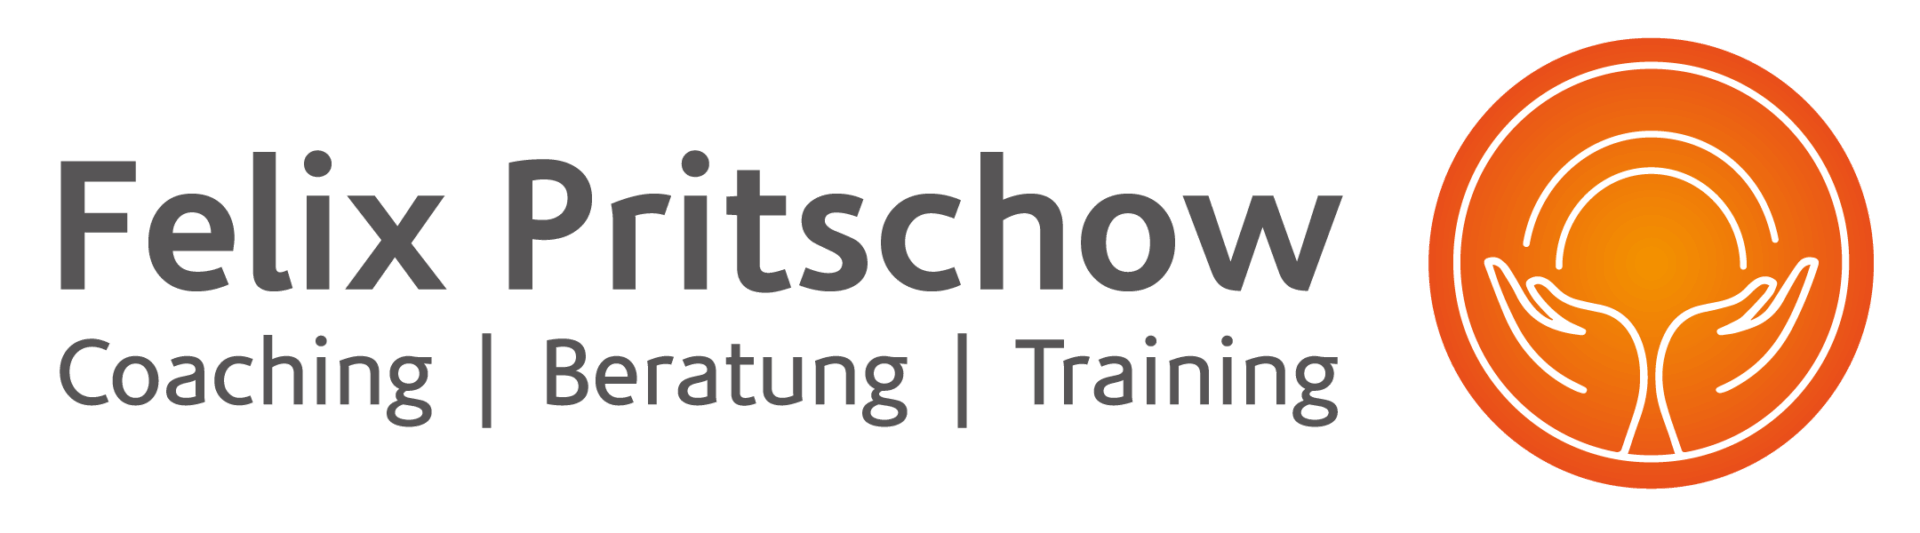 Logo Felix Pritschow Coaching, Beratung, Training